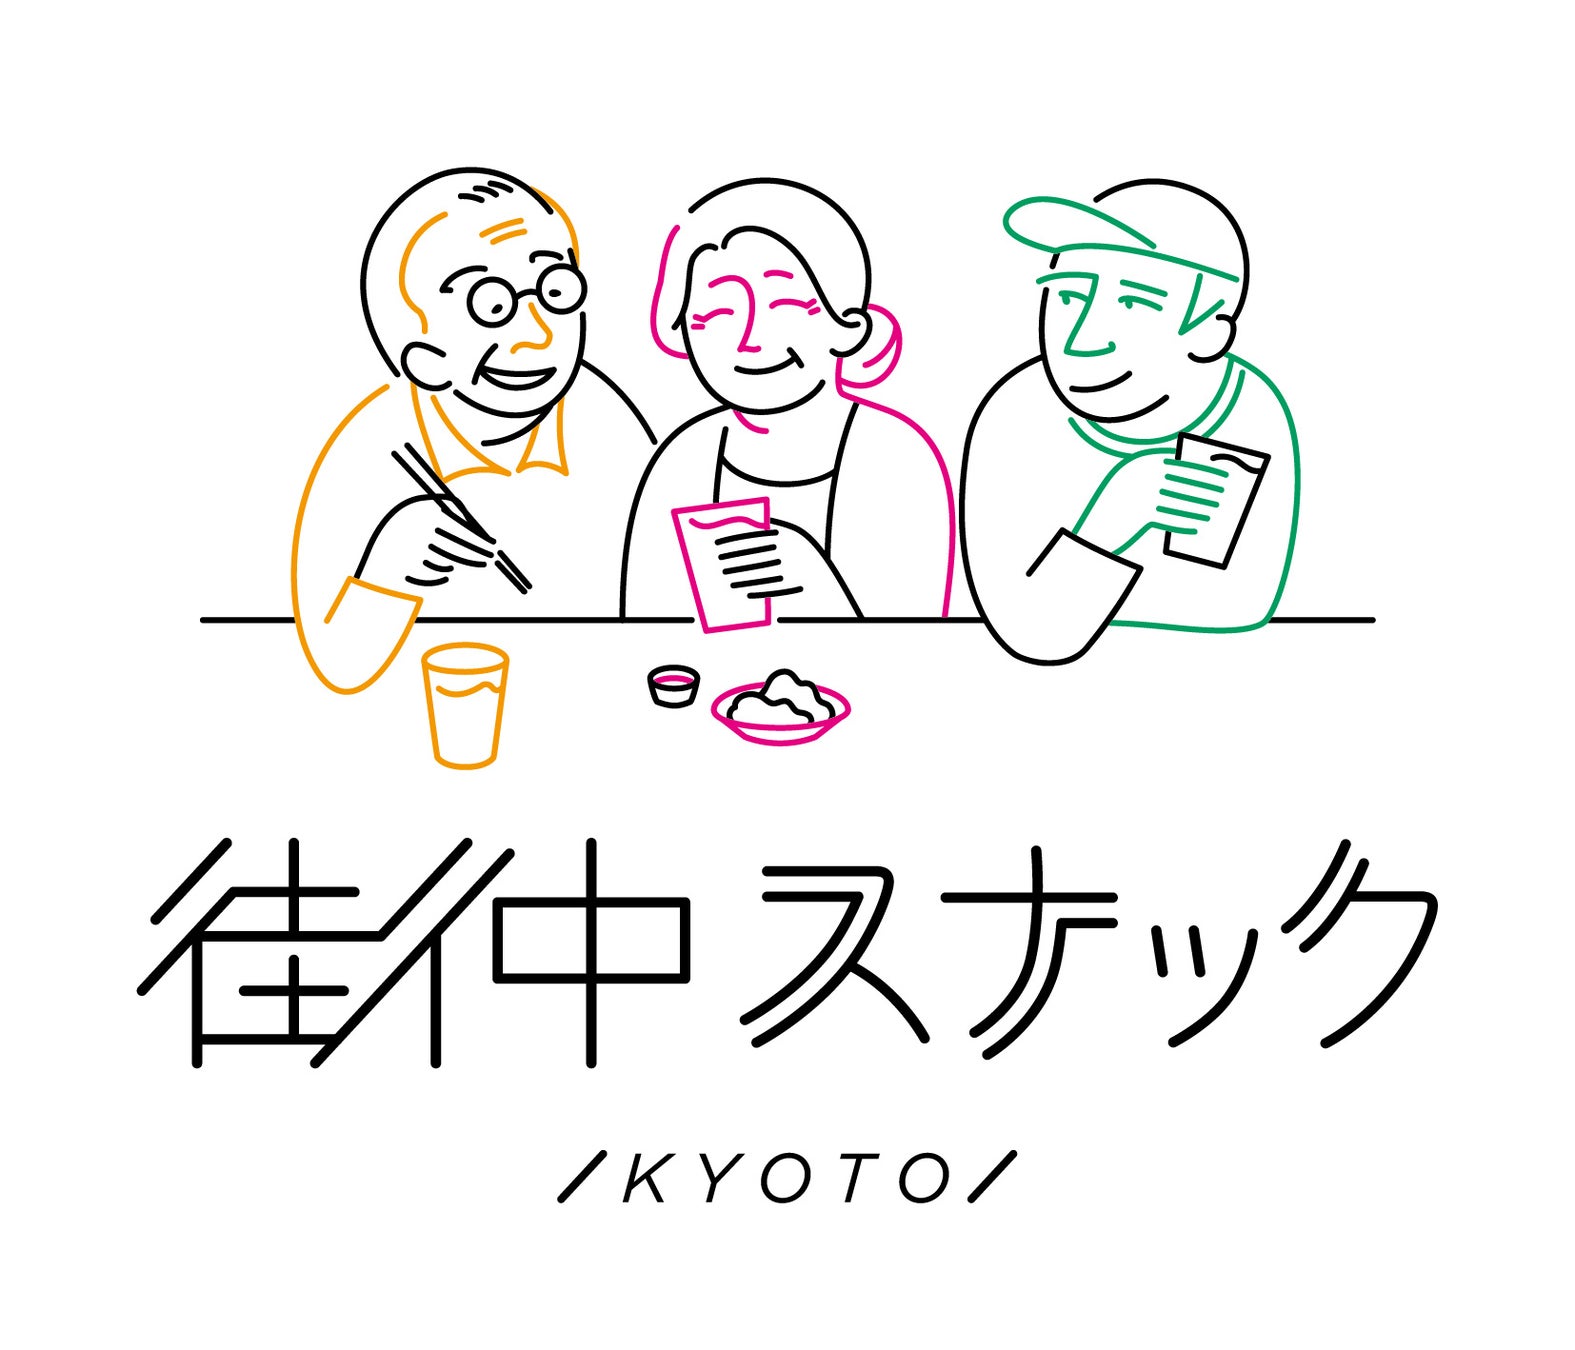 若者・現役・シニアの3世代交流を目的とした「街中スナック」が京都に4店舗目を出店